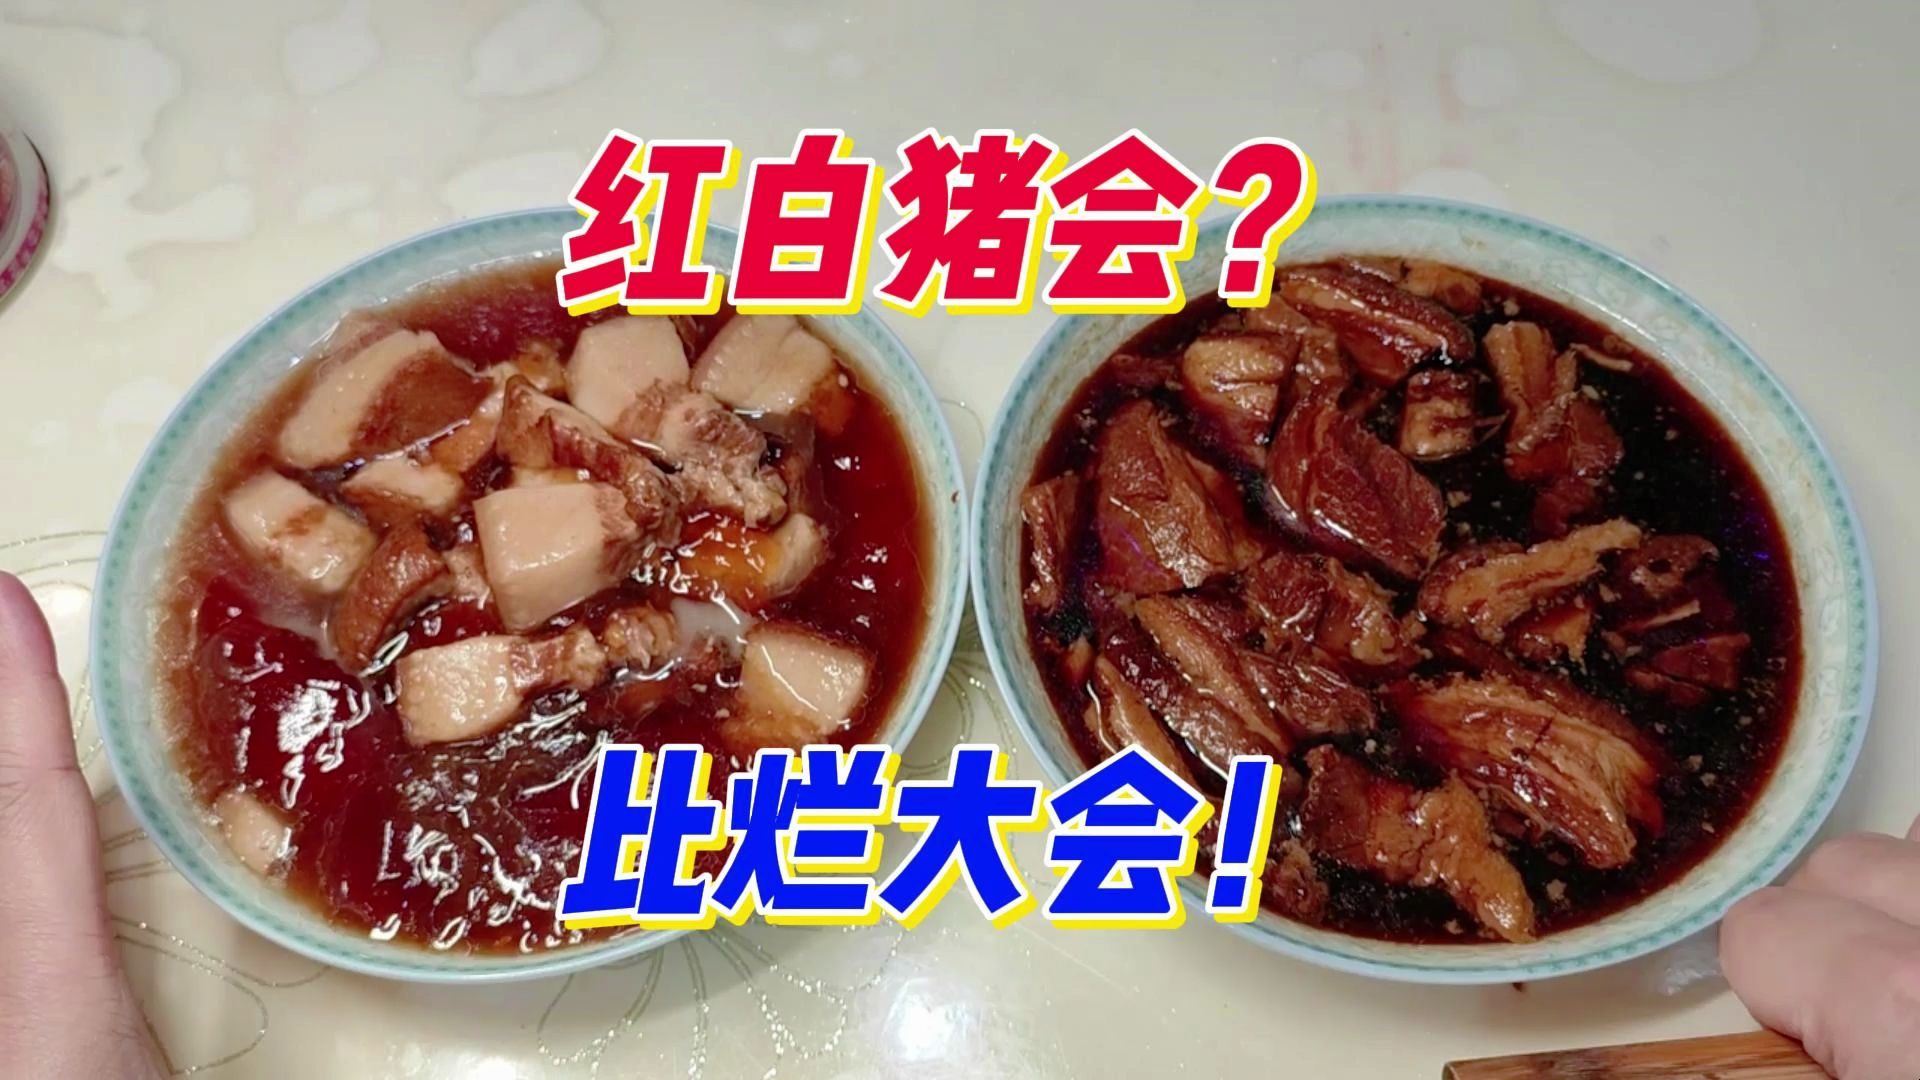 这期红烧肉给我测yue了，还不如吃新版预制菜，求点赞回血